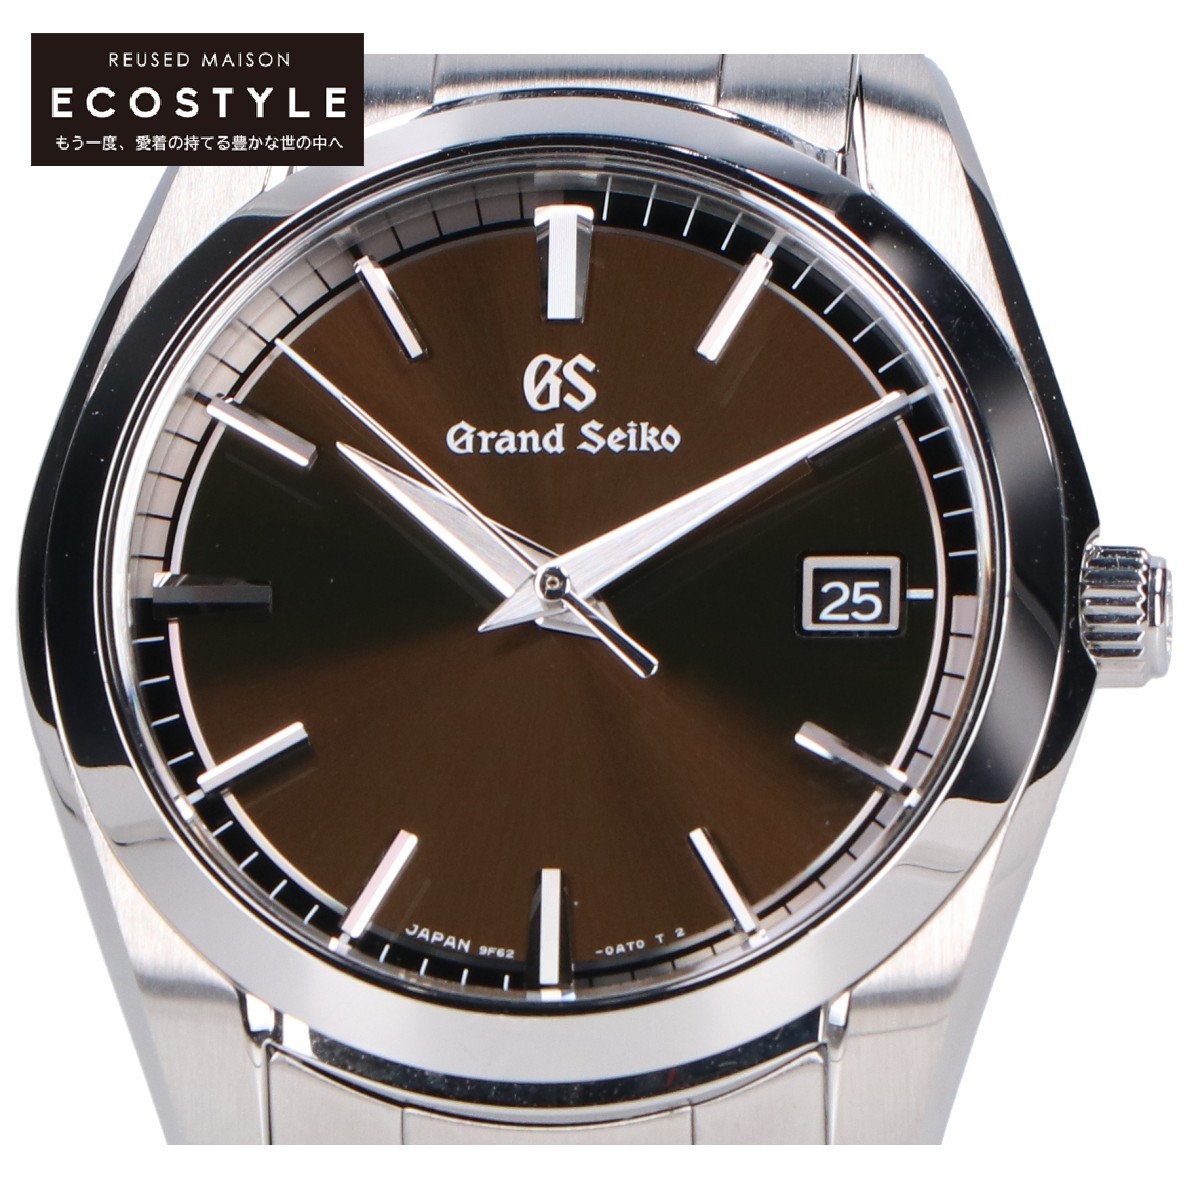 新品同様 Grand Seiko グランドセイコー SBGX273 9F62 Heritage Collection ヘリテージコレクション デイト クオーツ 腕時計 シルバー